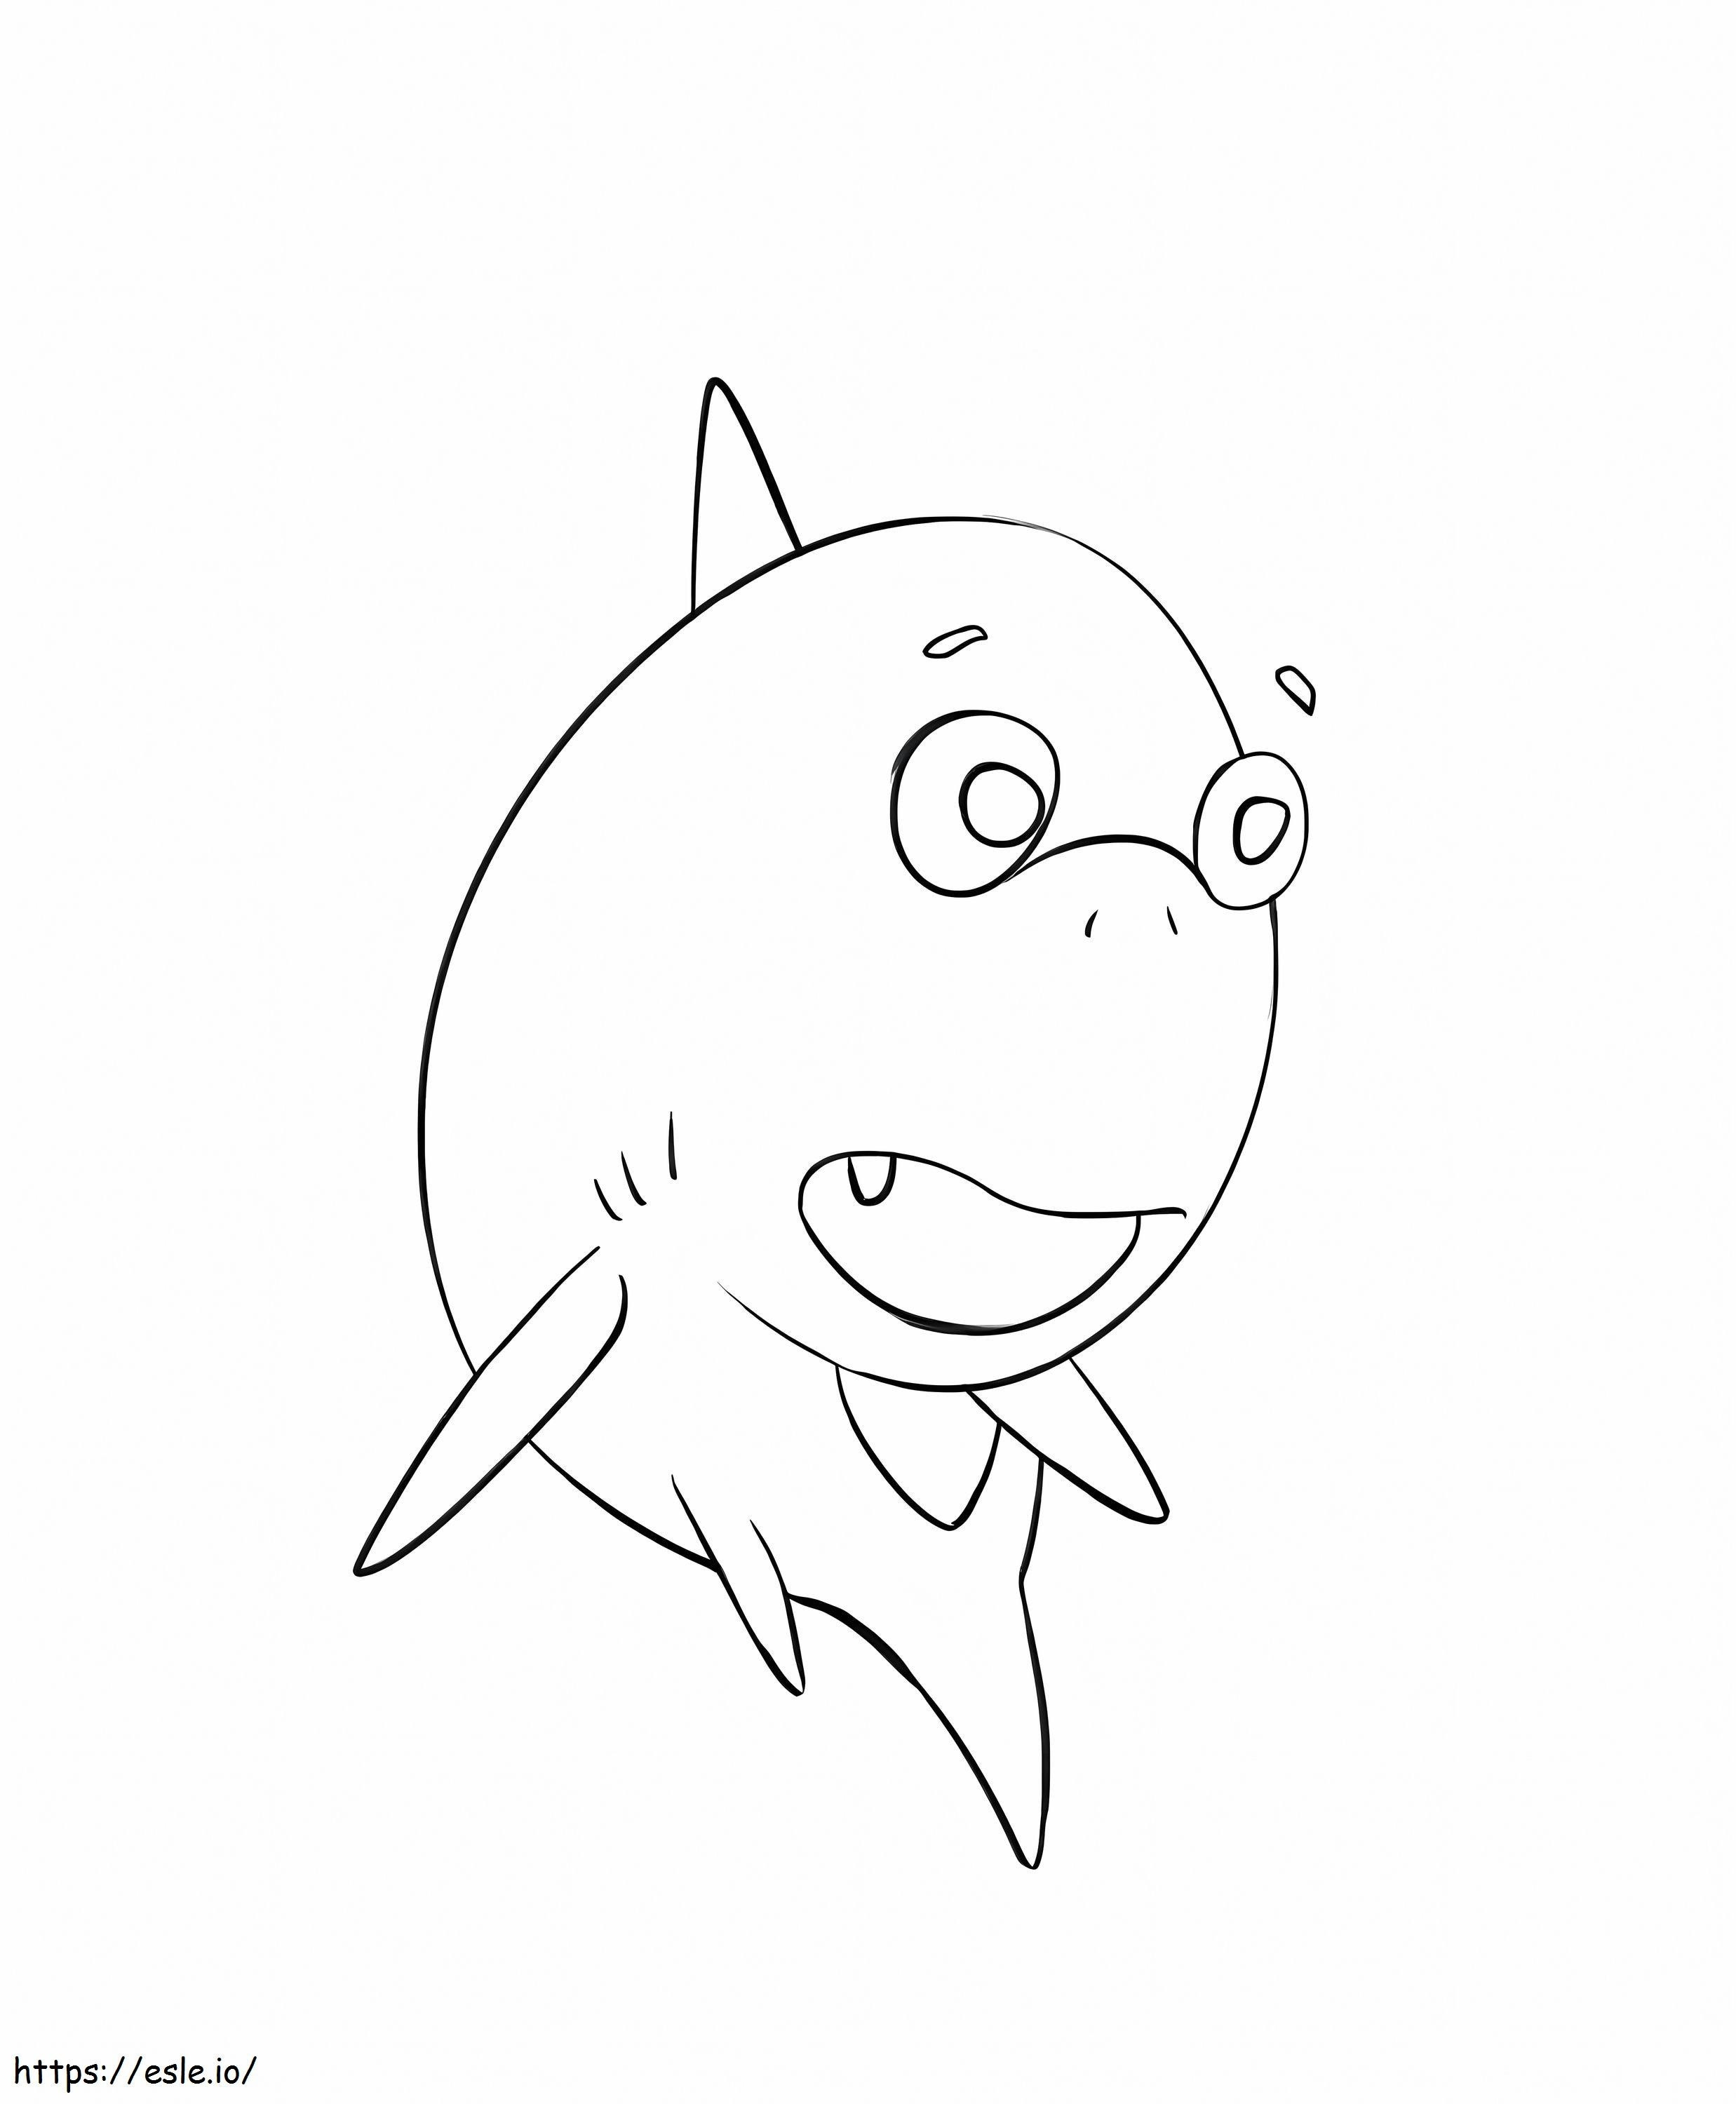 Coloriage Gros bébé requin à imprimer dessin